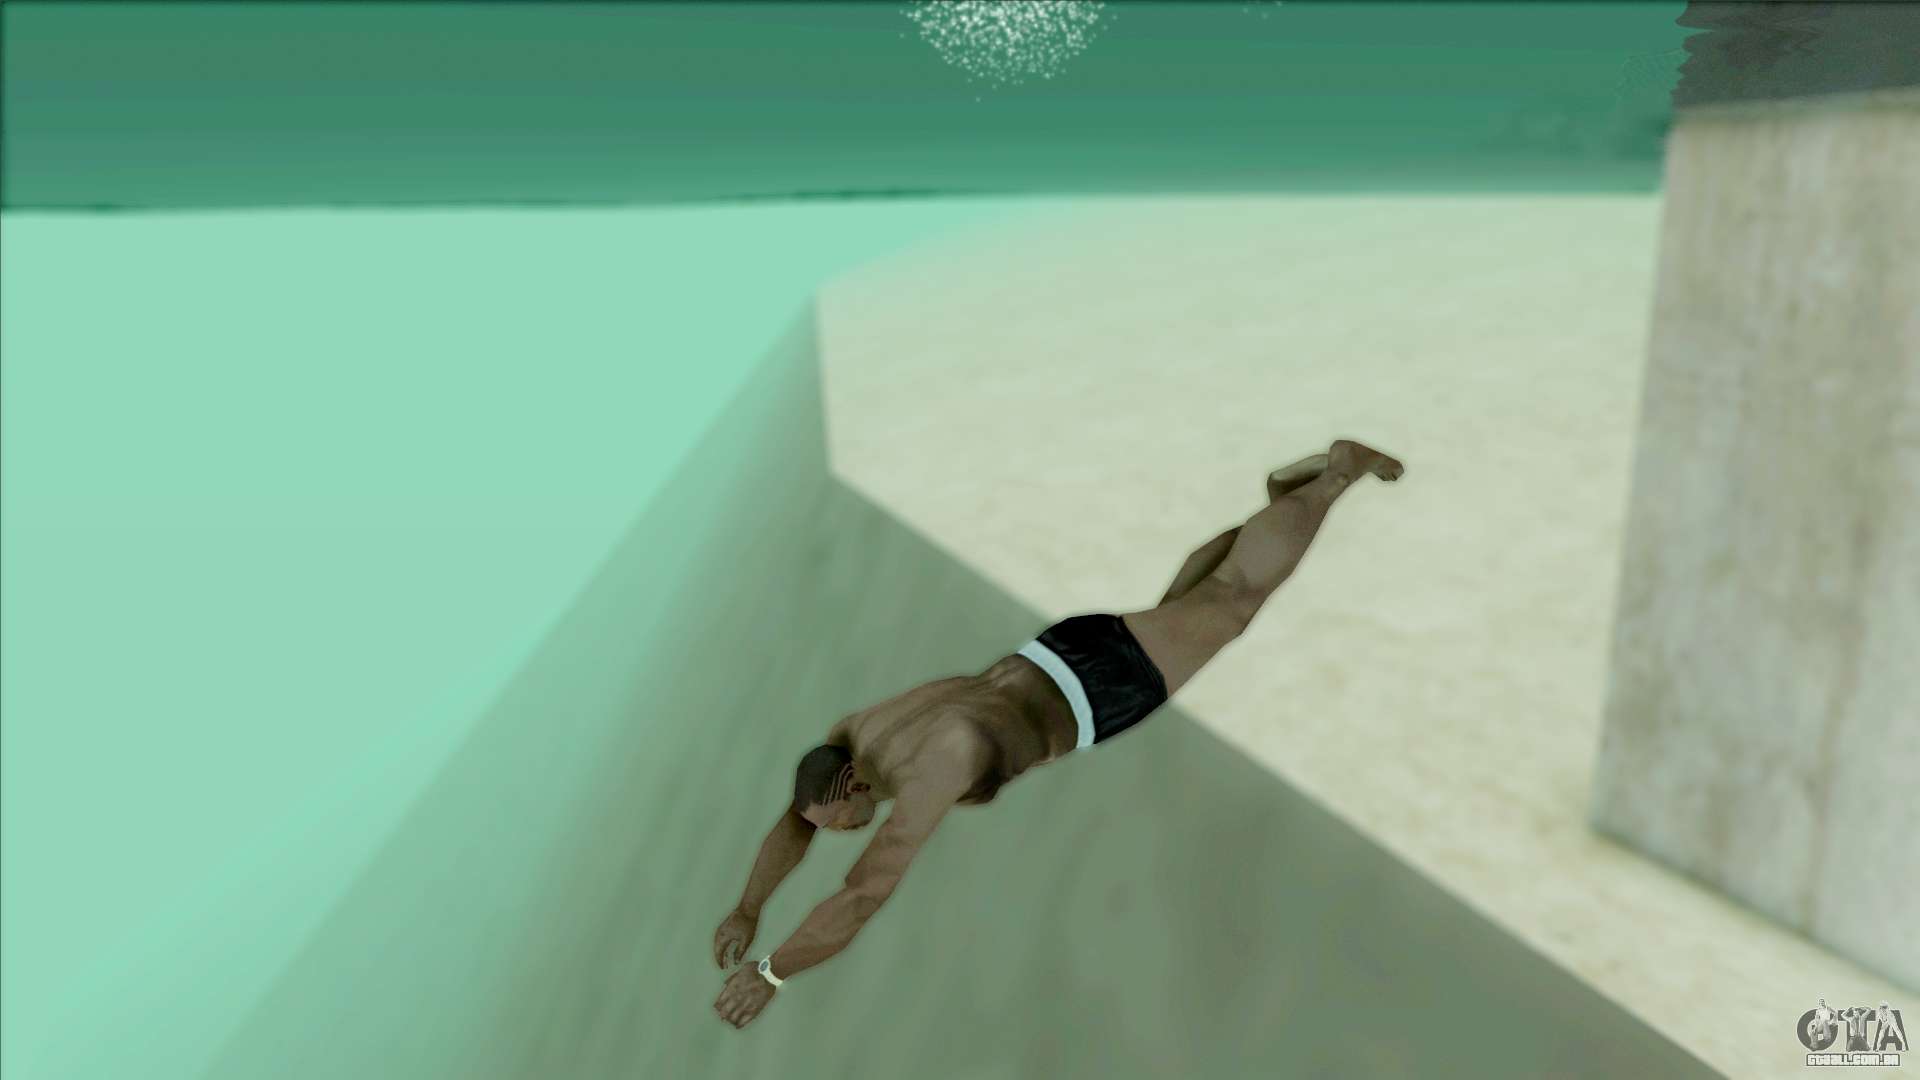 GTA V Style Diving Final para GTA San Andreas